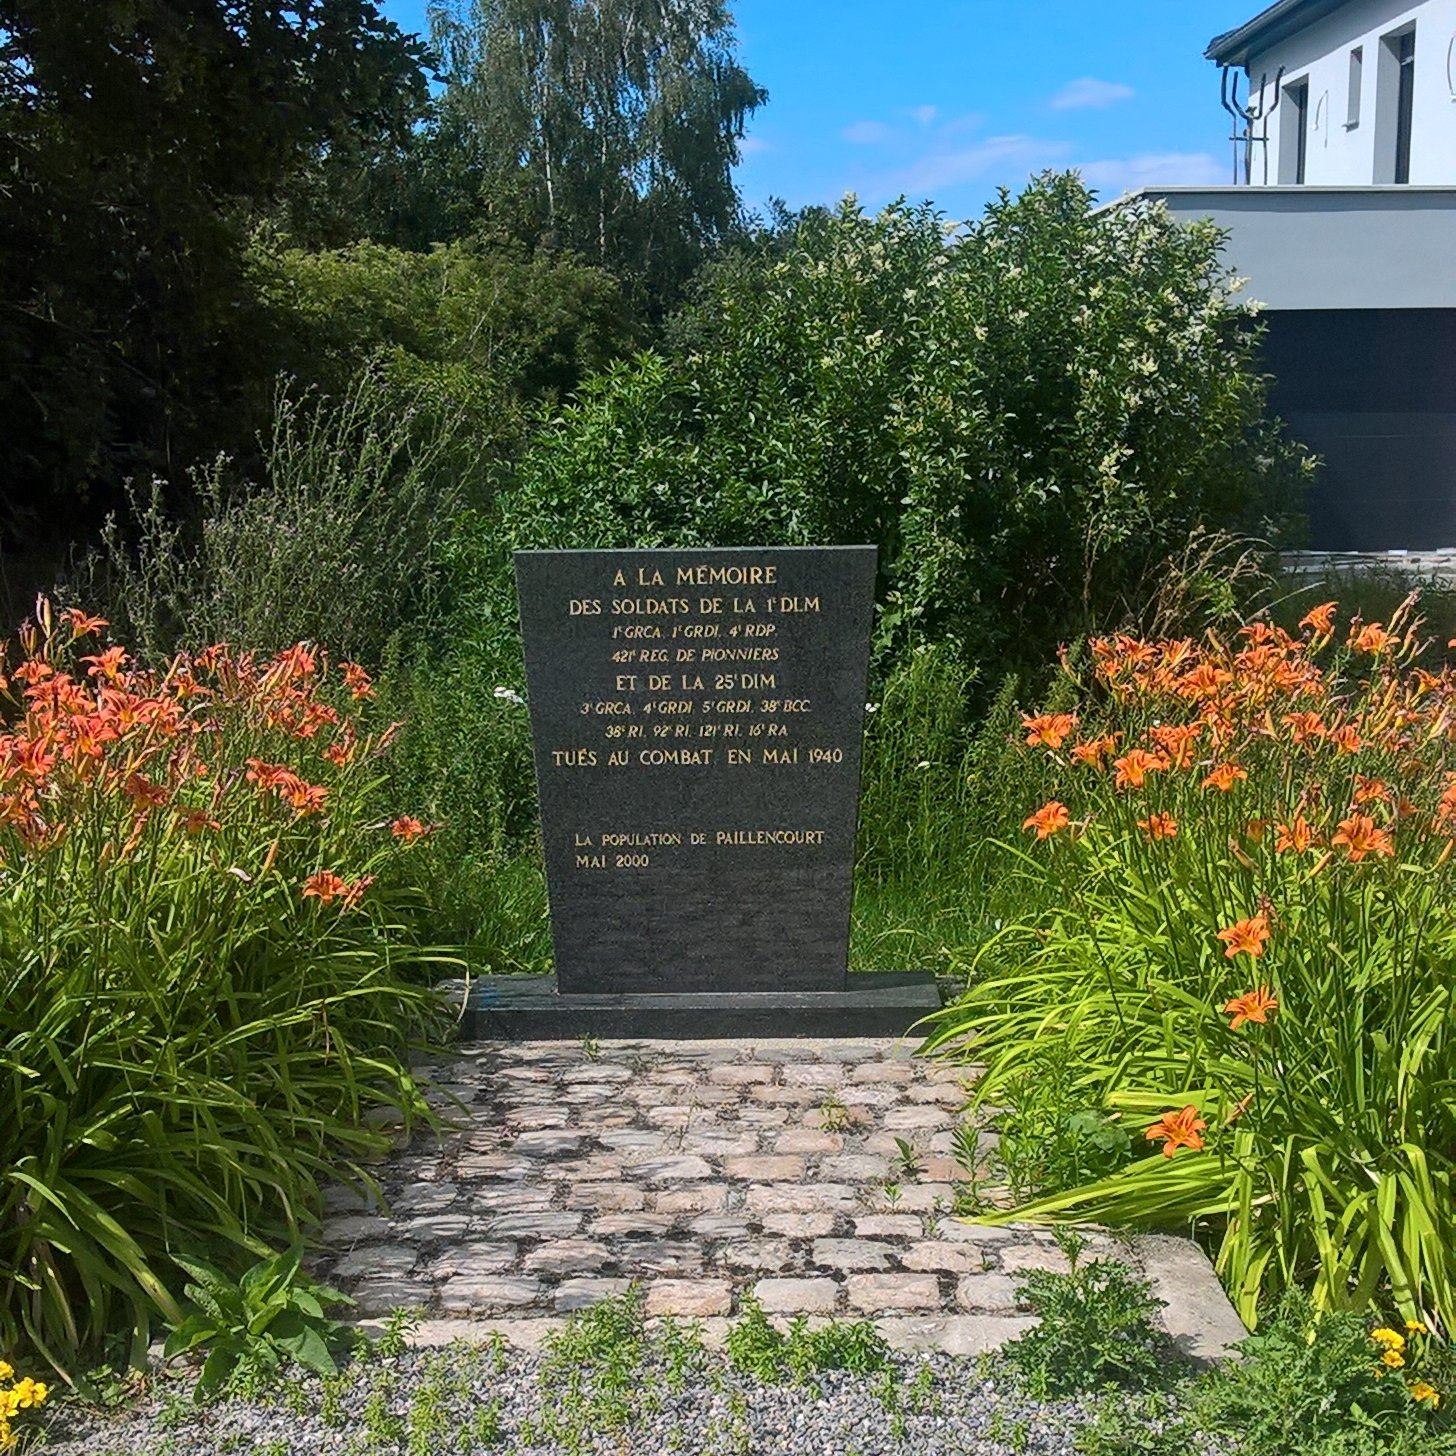 Le monument aux morts de la Seconde Guerre Mondiale à Paillencourt